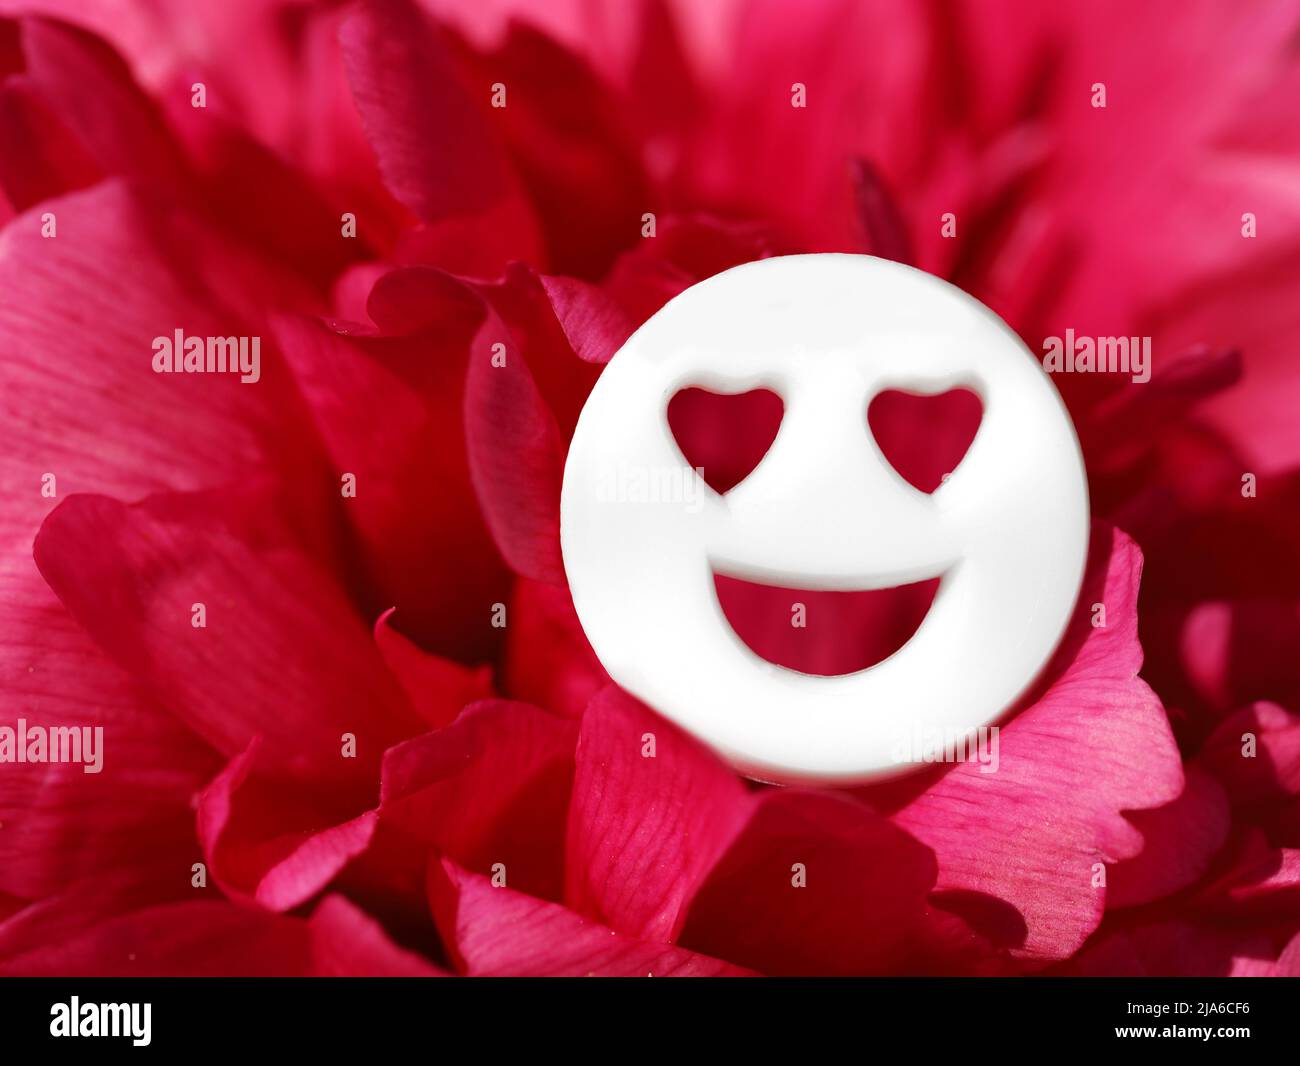 Cara blanca sonriente con ojos de corazón en pétalos de rosa rojos, imagen conceptual para el día de San Valentín o estar enamorado Foto de stock